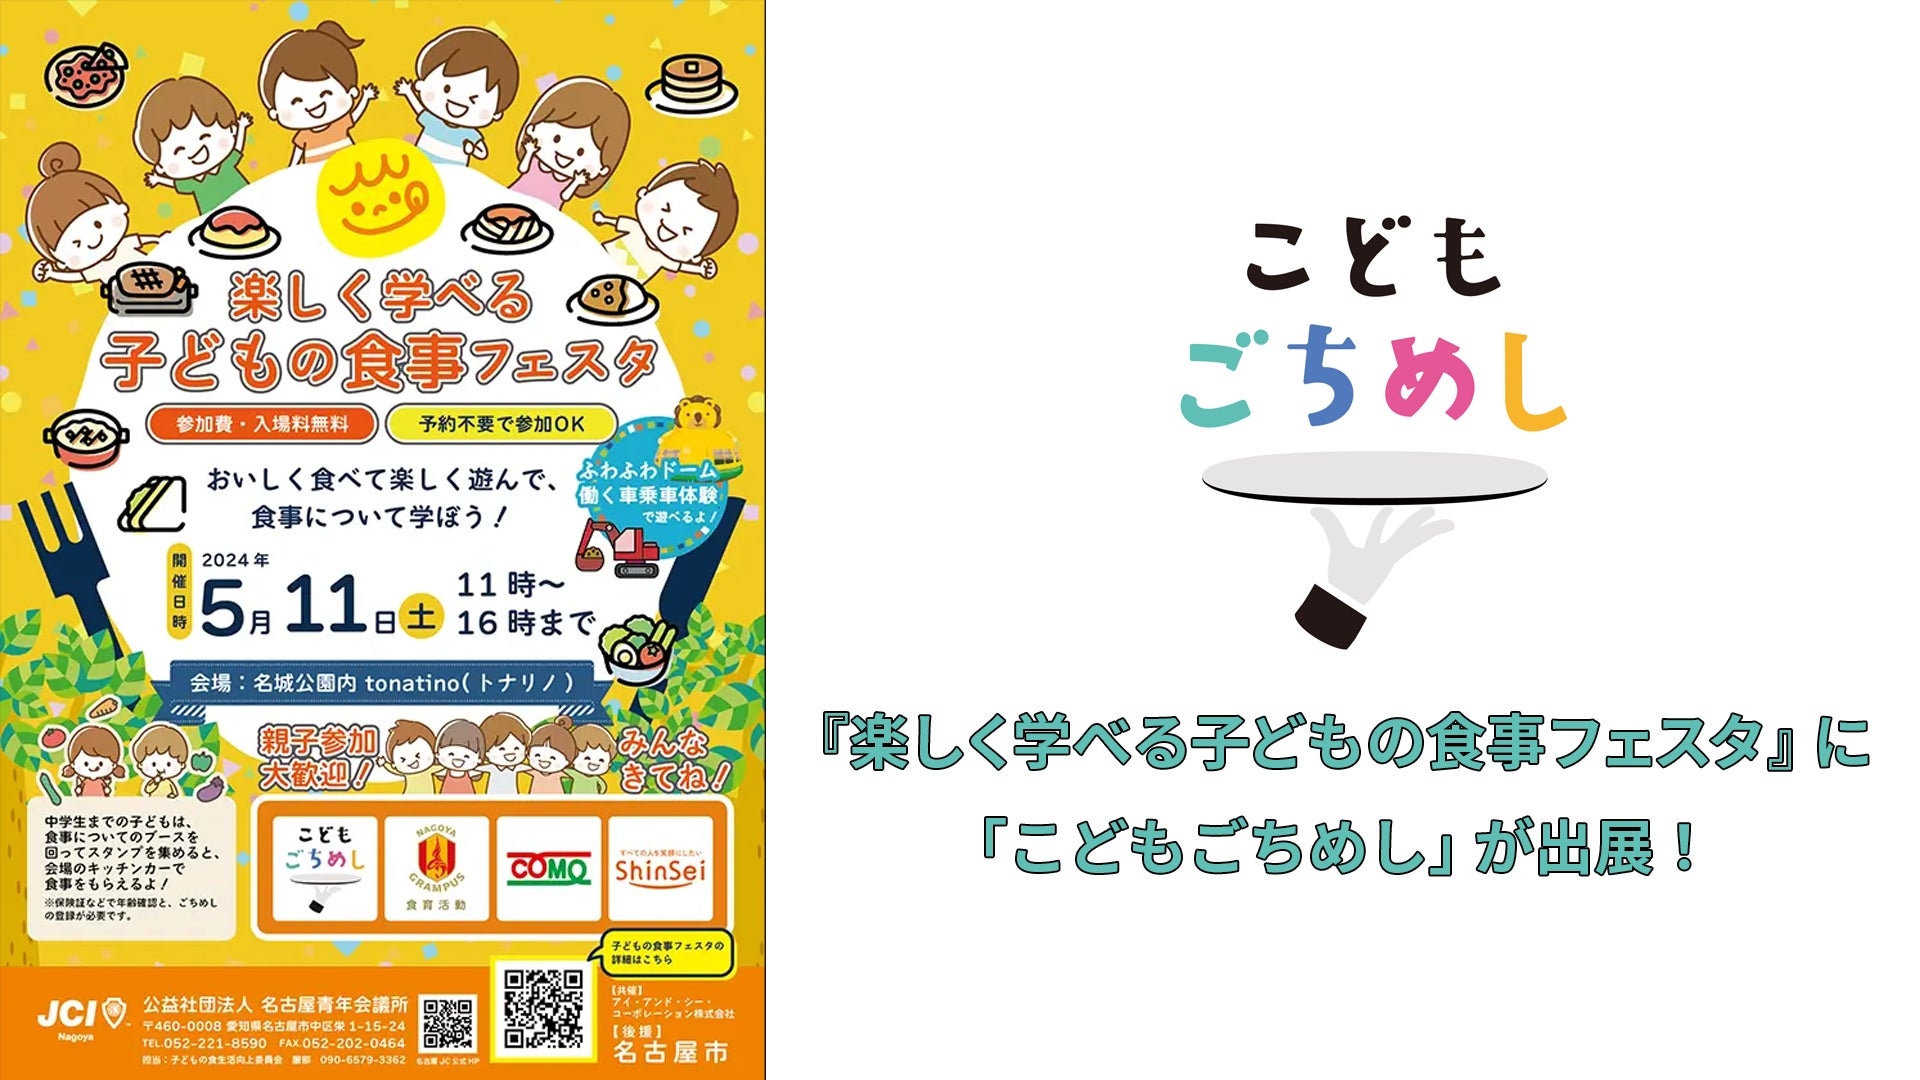 《イベントレポート》名古屋市「楽しく学べる子どもの食事フェスタ」に「こどもごちめし」が出展！